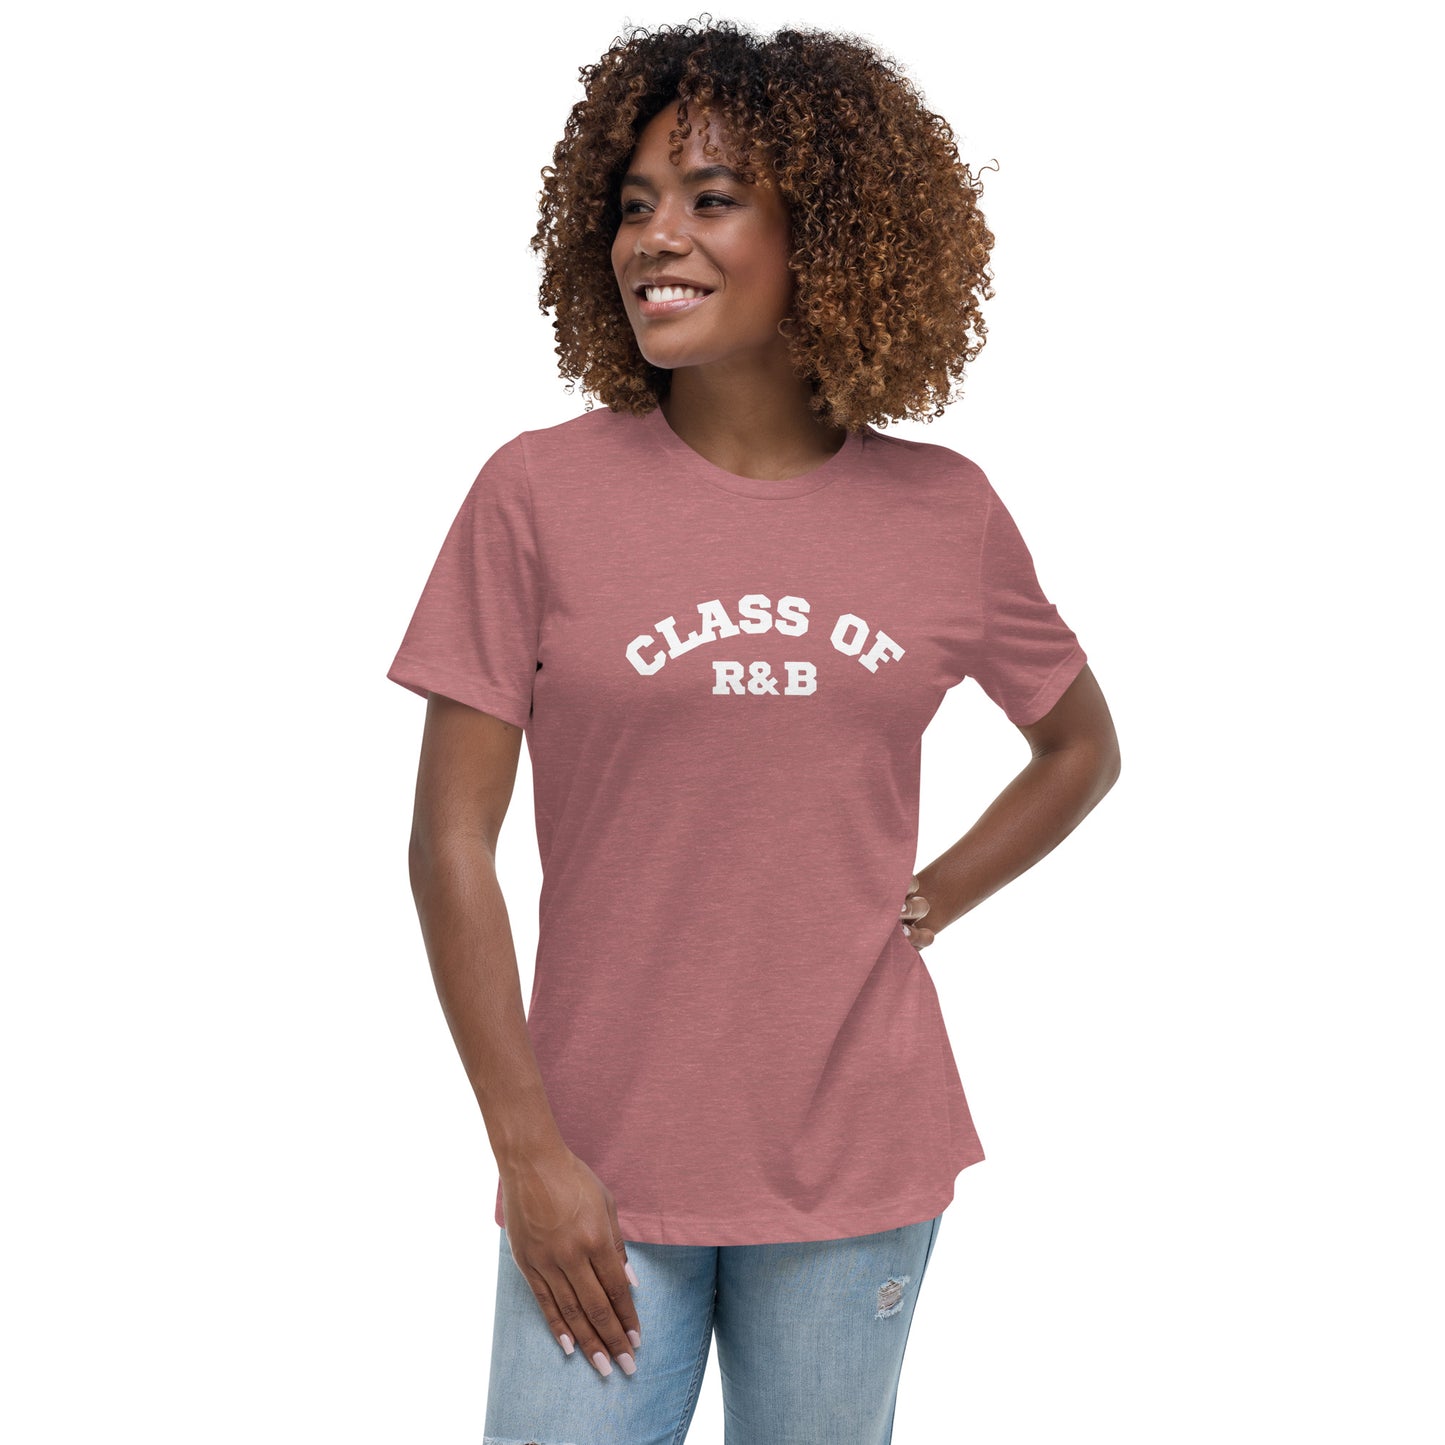 Class of R&B Women's Relaxed T-Shirt